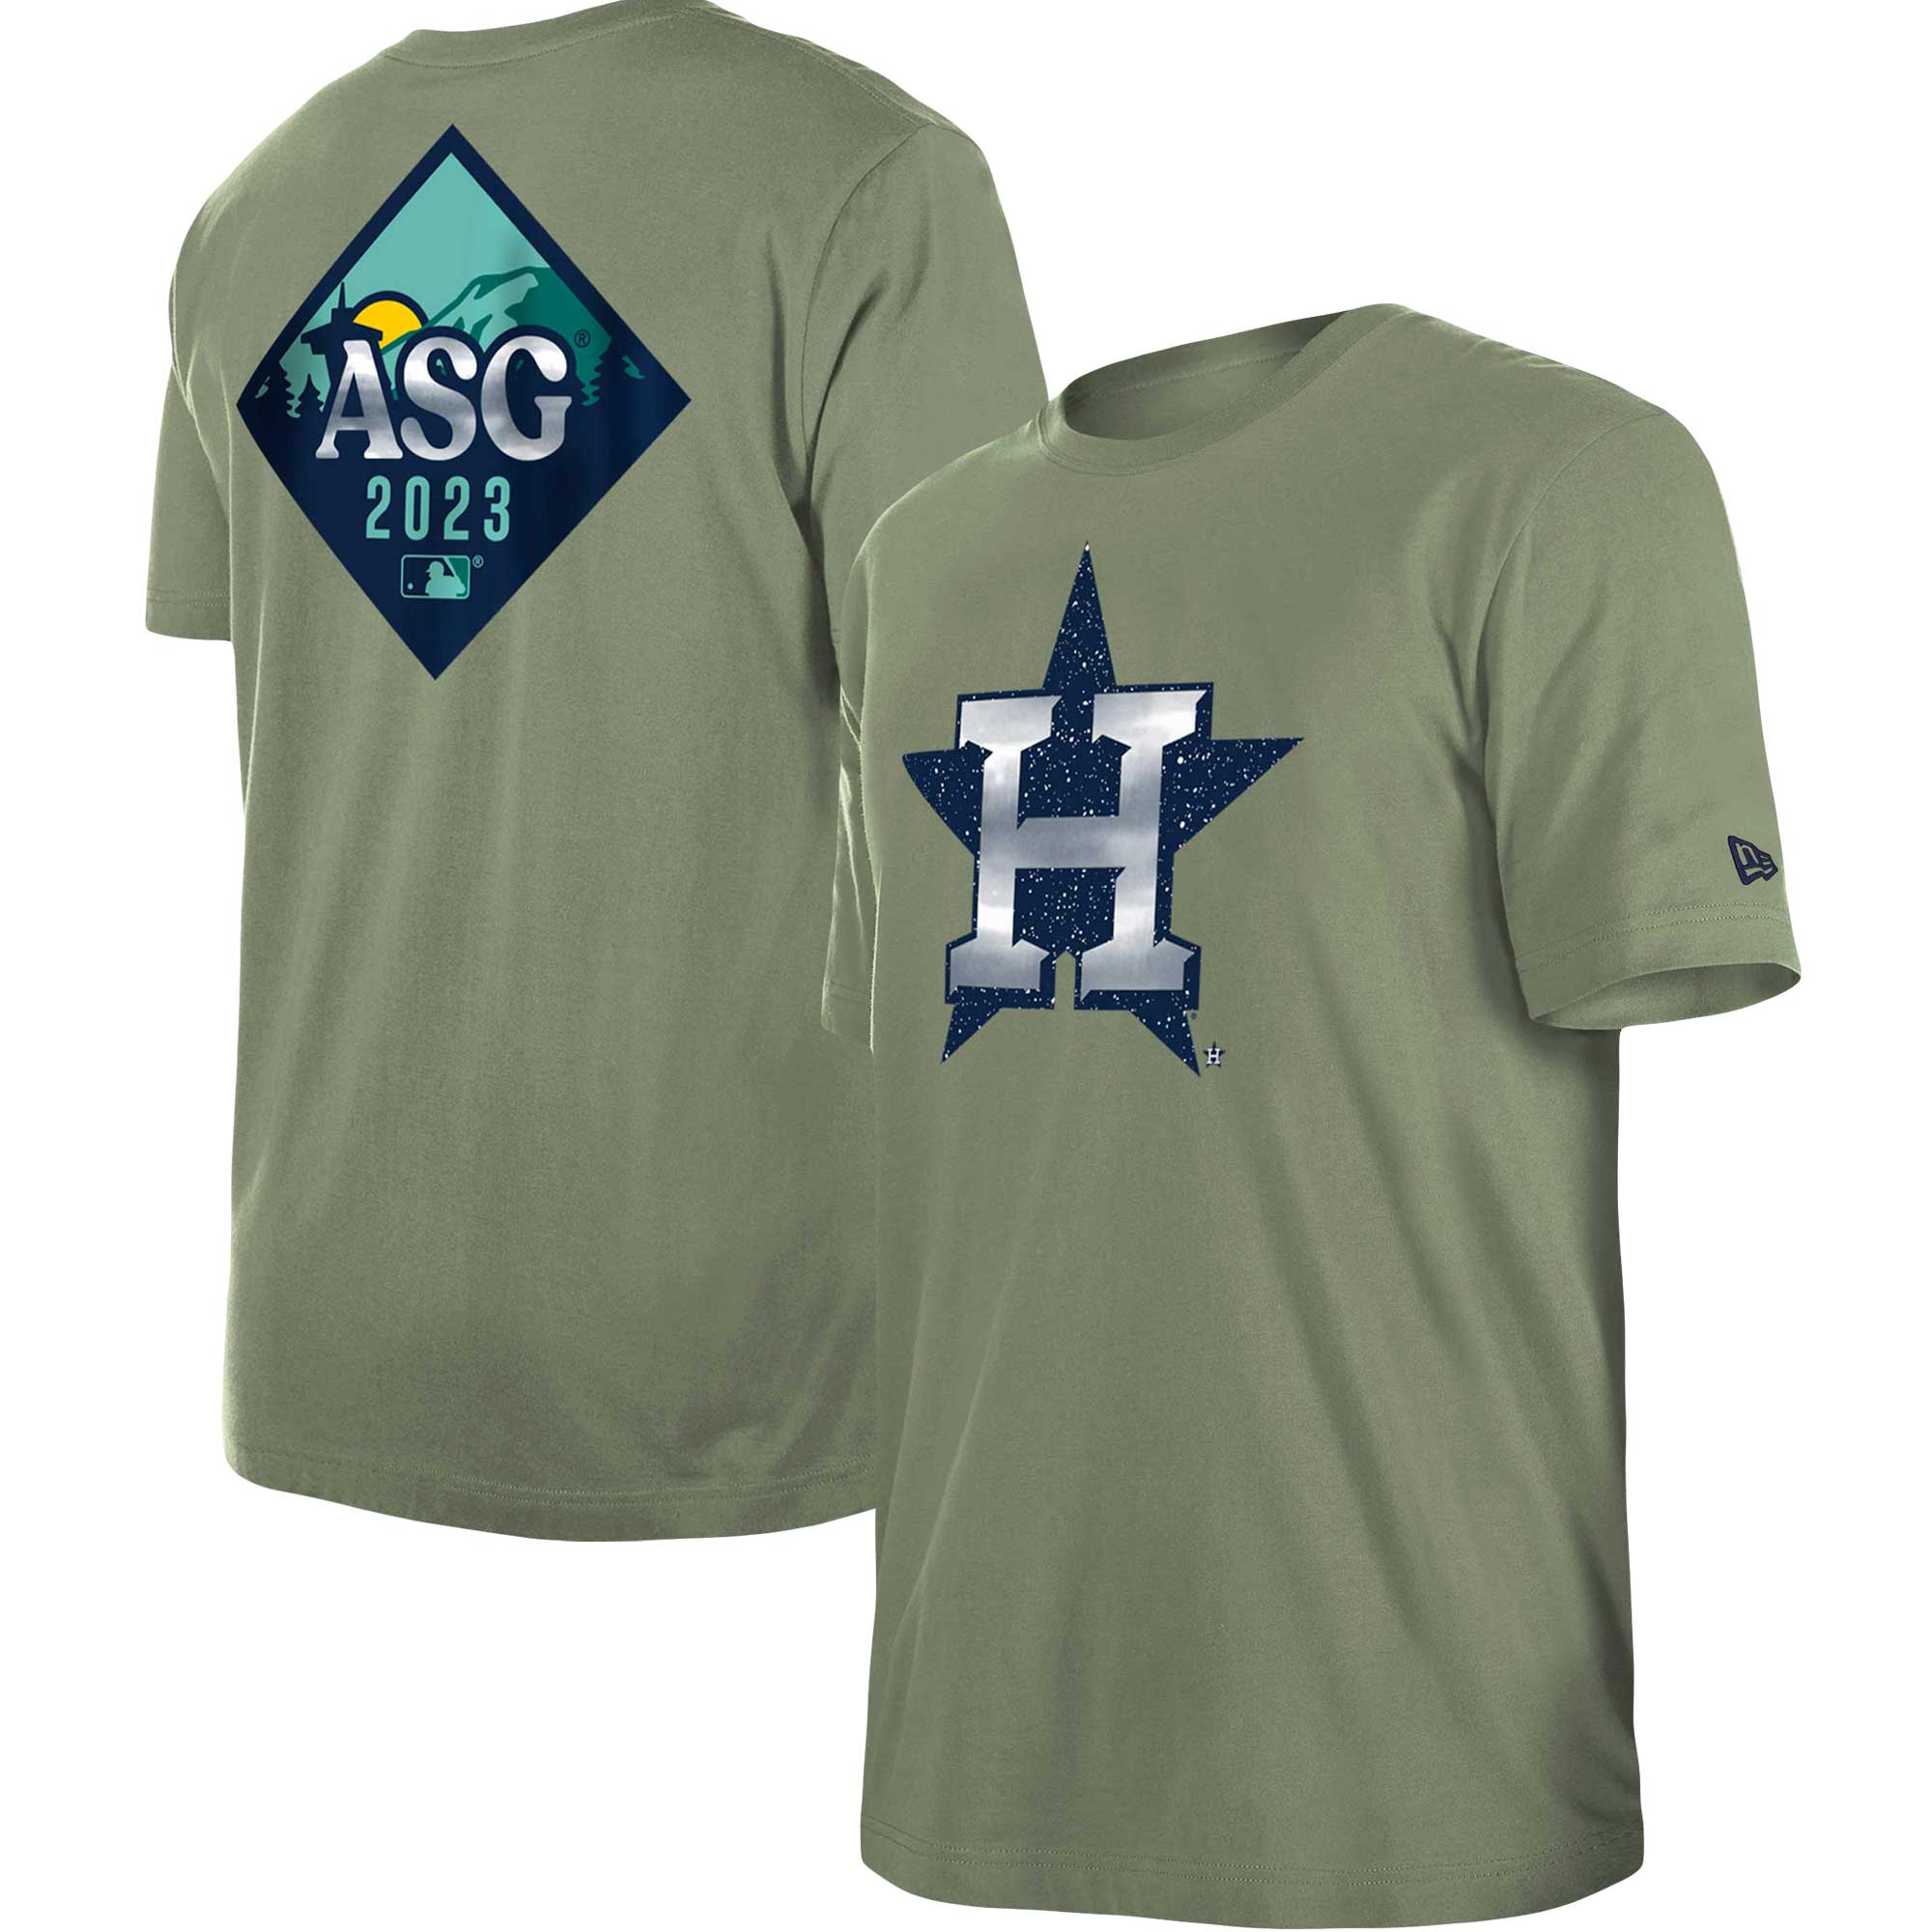 Never Settle Houston Astros Shirt-Teechatpro